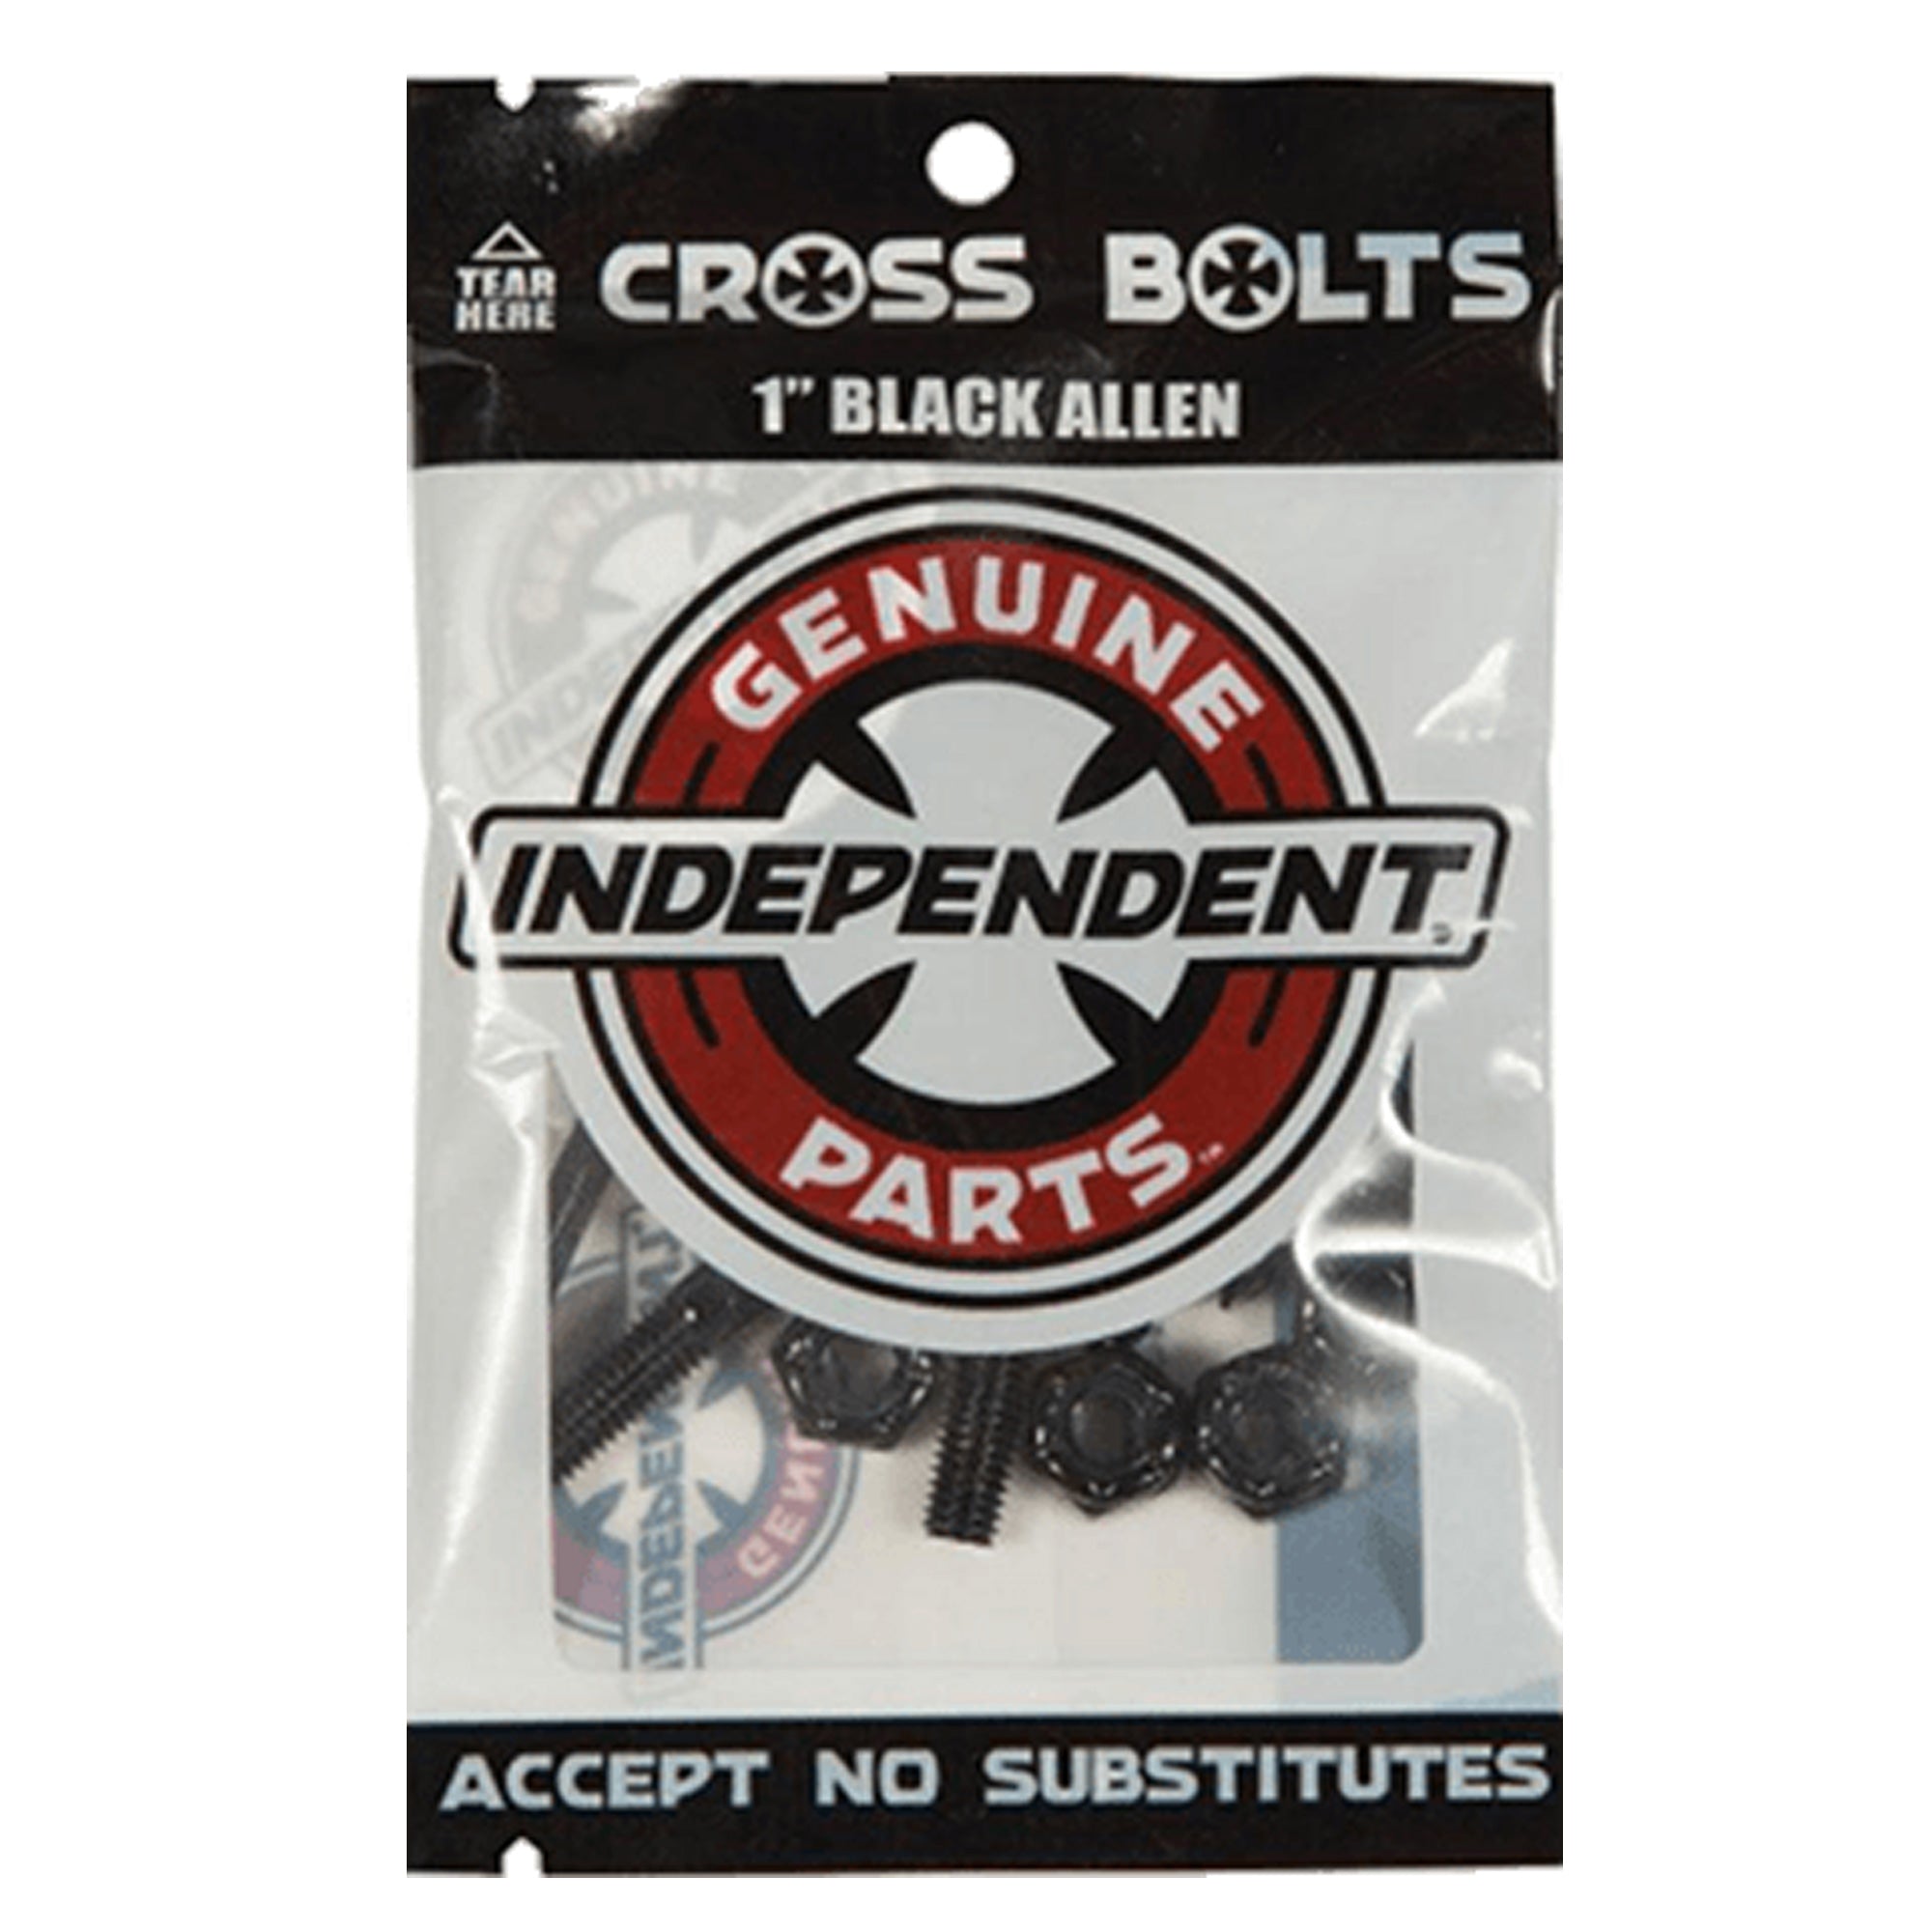 Independent Cross Bolts - 1" Allen Key